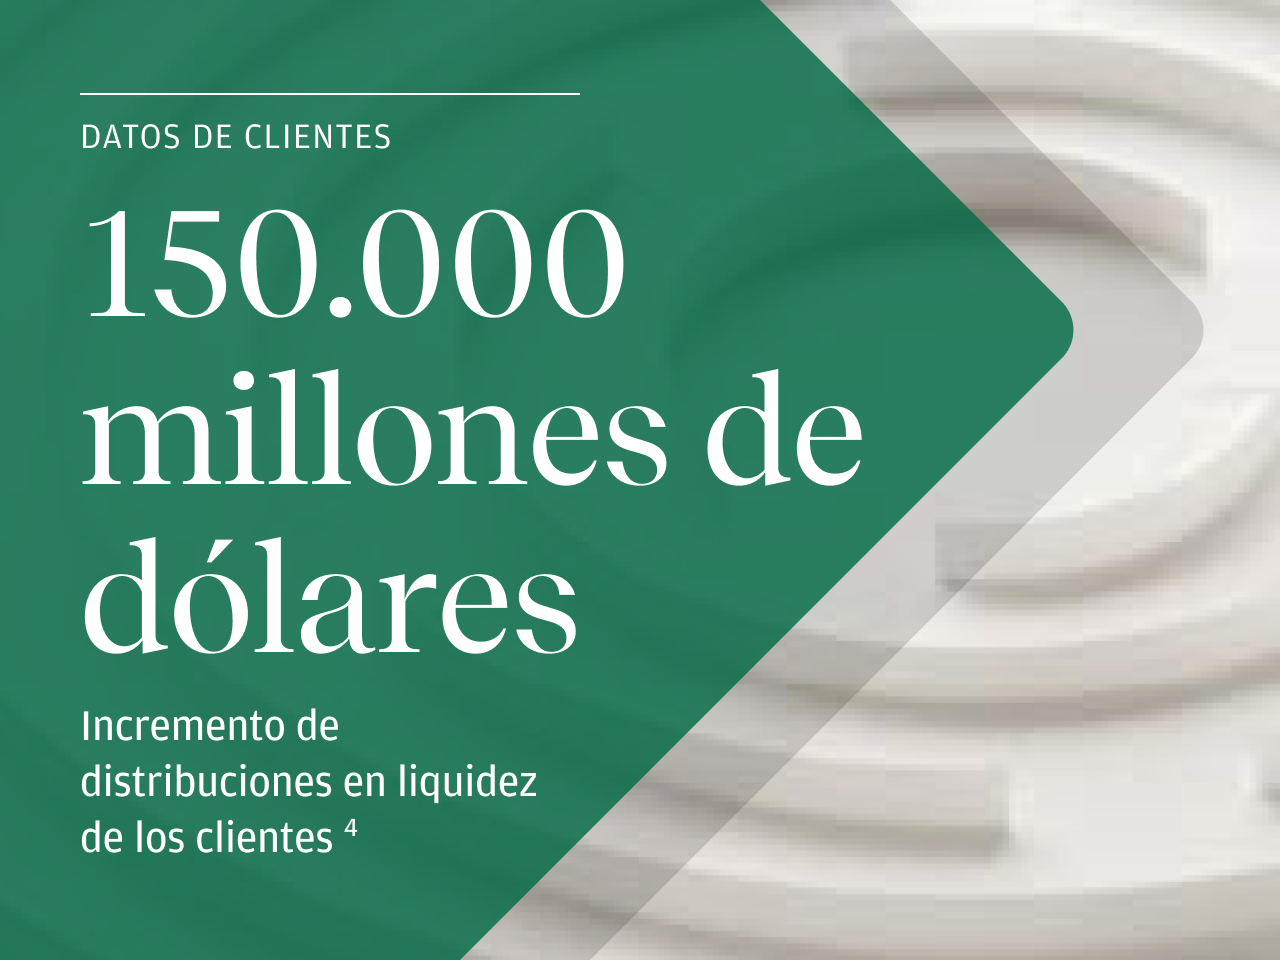 DATOS DE CLIENTES 150.000 millones de dólares Incremento de distribuciones en liquidez de los clientes. footnote 4